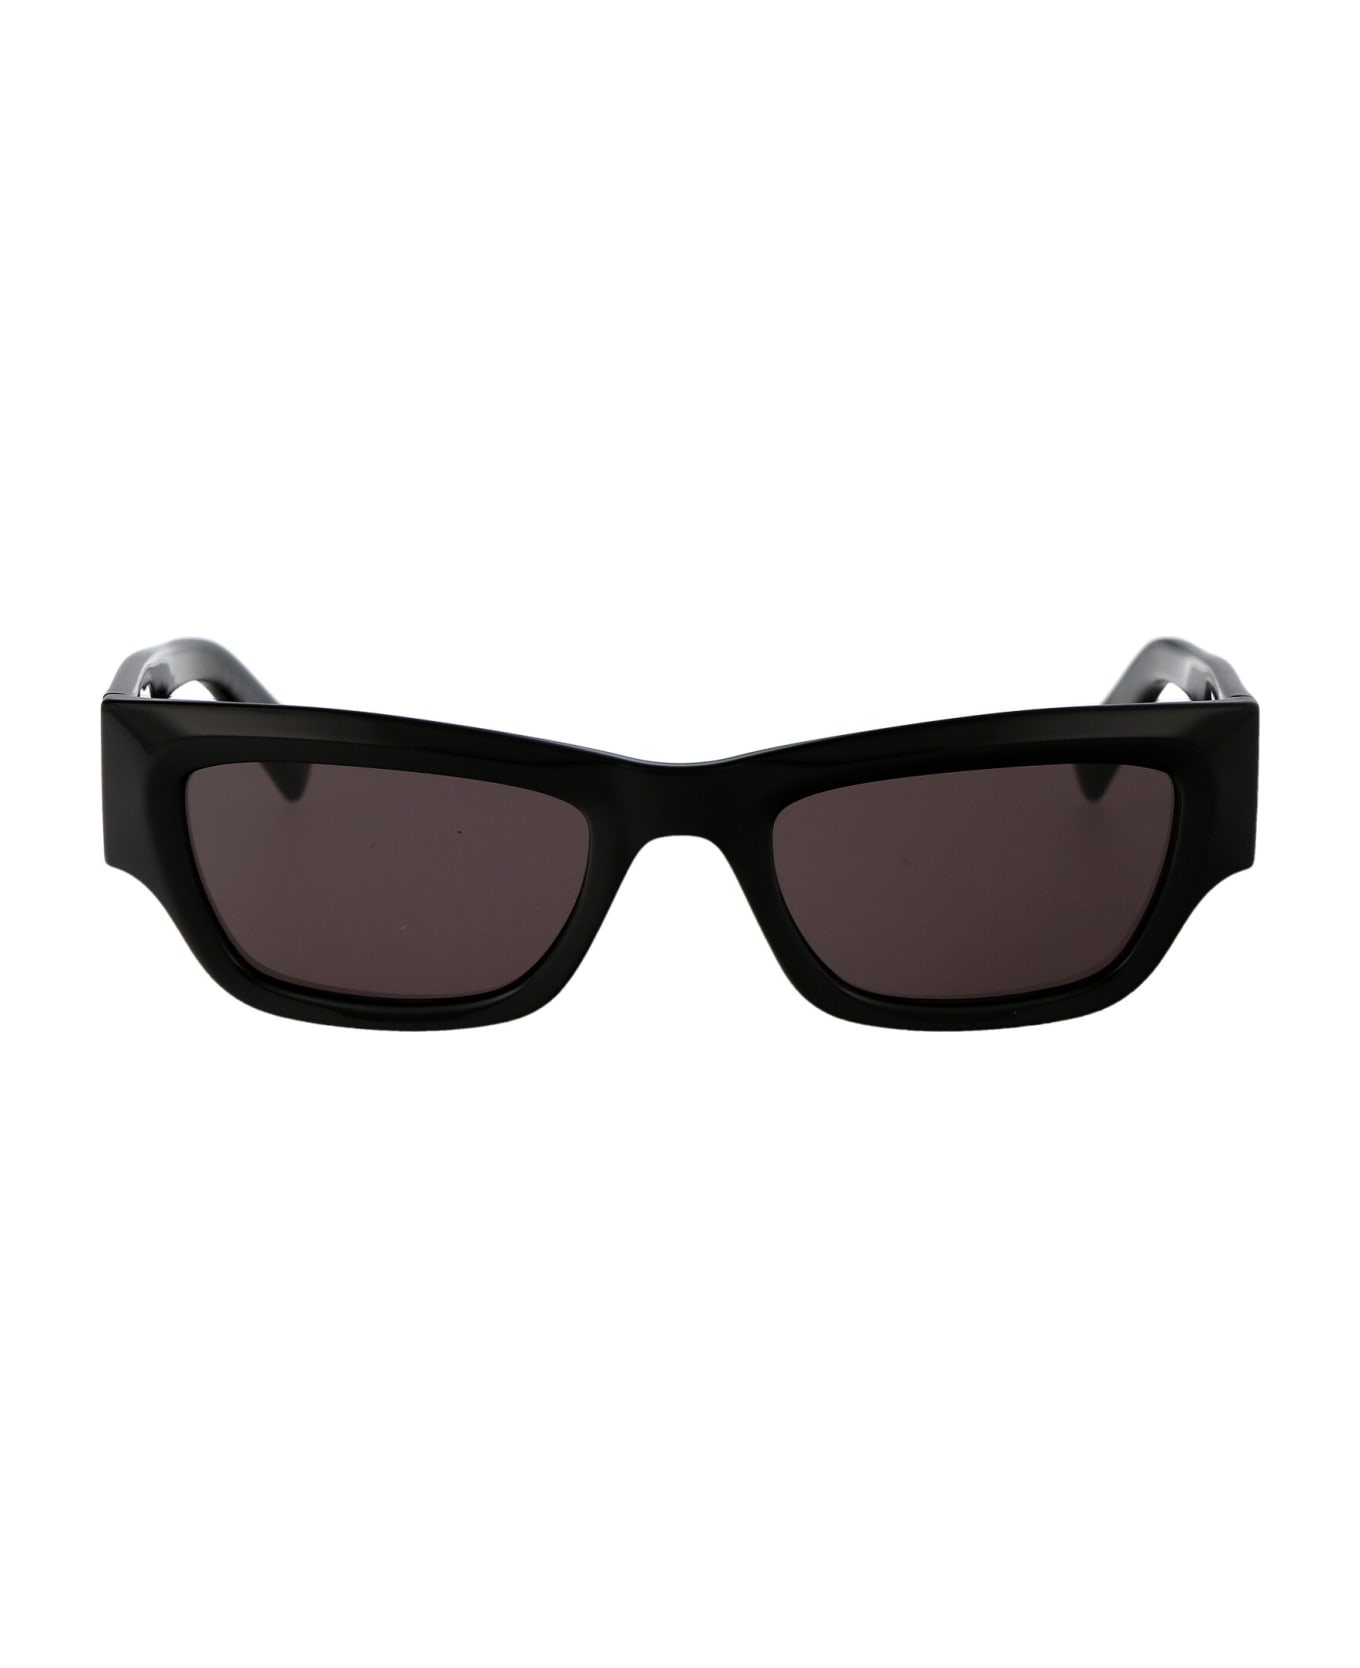 Karl Lagerfeld Kl6141s Sunglasses - 001 BLACK